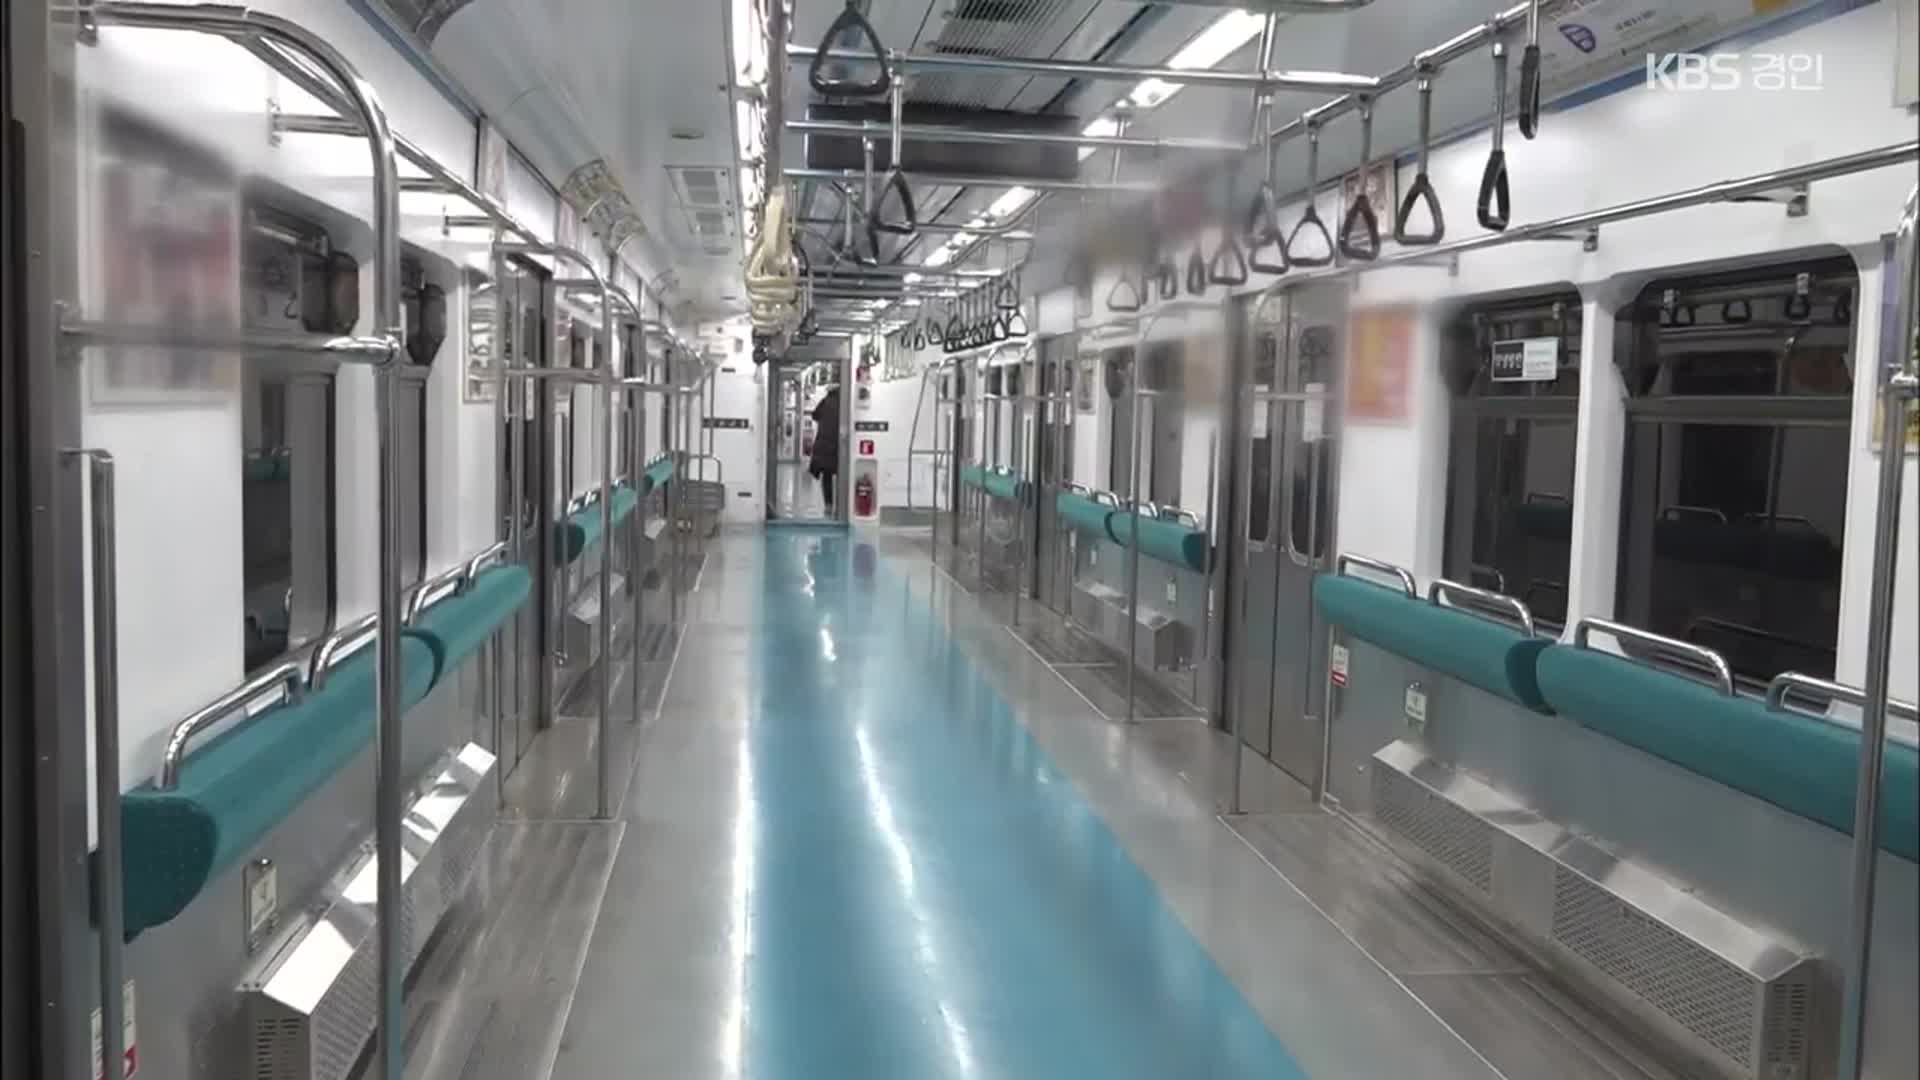 ‘혼잡 개선’ vs ‘안전 우려’…의자 없앤 지하철, 반응은?